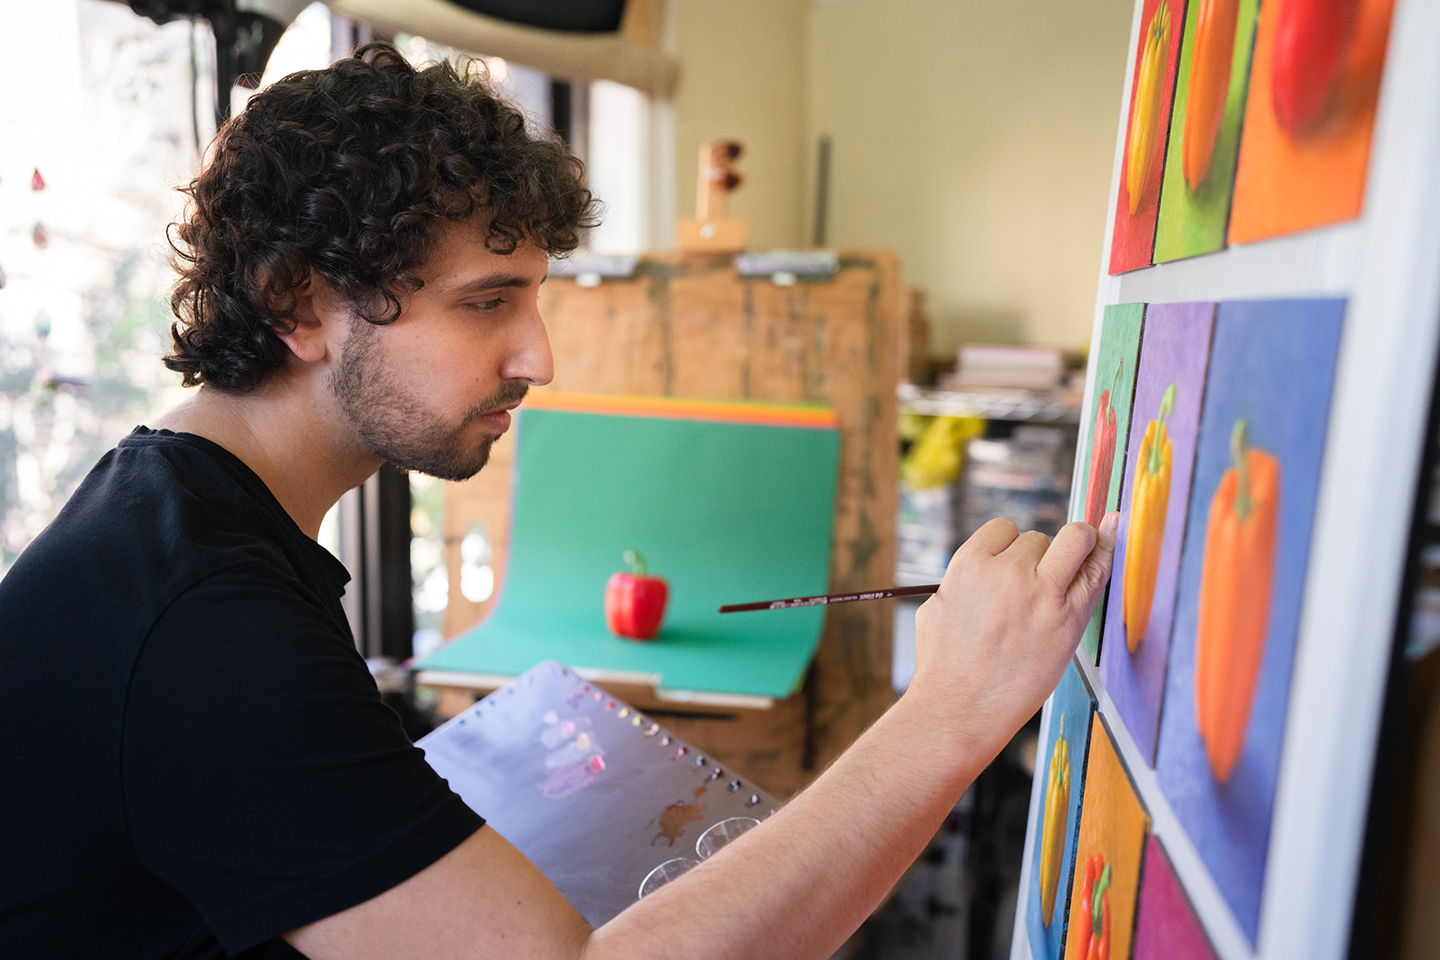 Họa sỹ Goshen vẽ bức “Pilpelim” trong xưởng của mình, ảnh do nhiếp ảnh gia Jeremy Cohen chụp. (Ảnh: Đăng dưới sự cho phép của họa sỹ Ken Goshen)